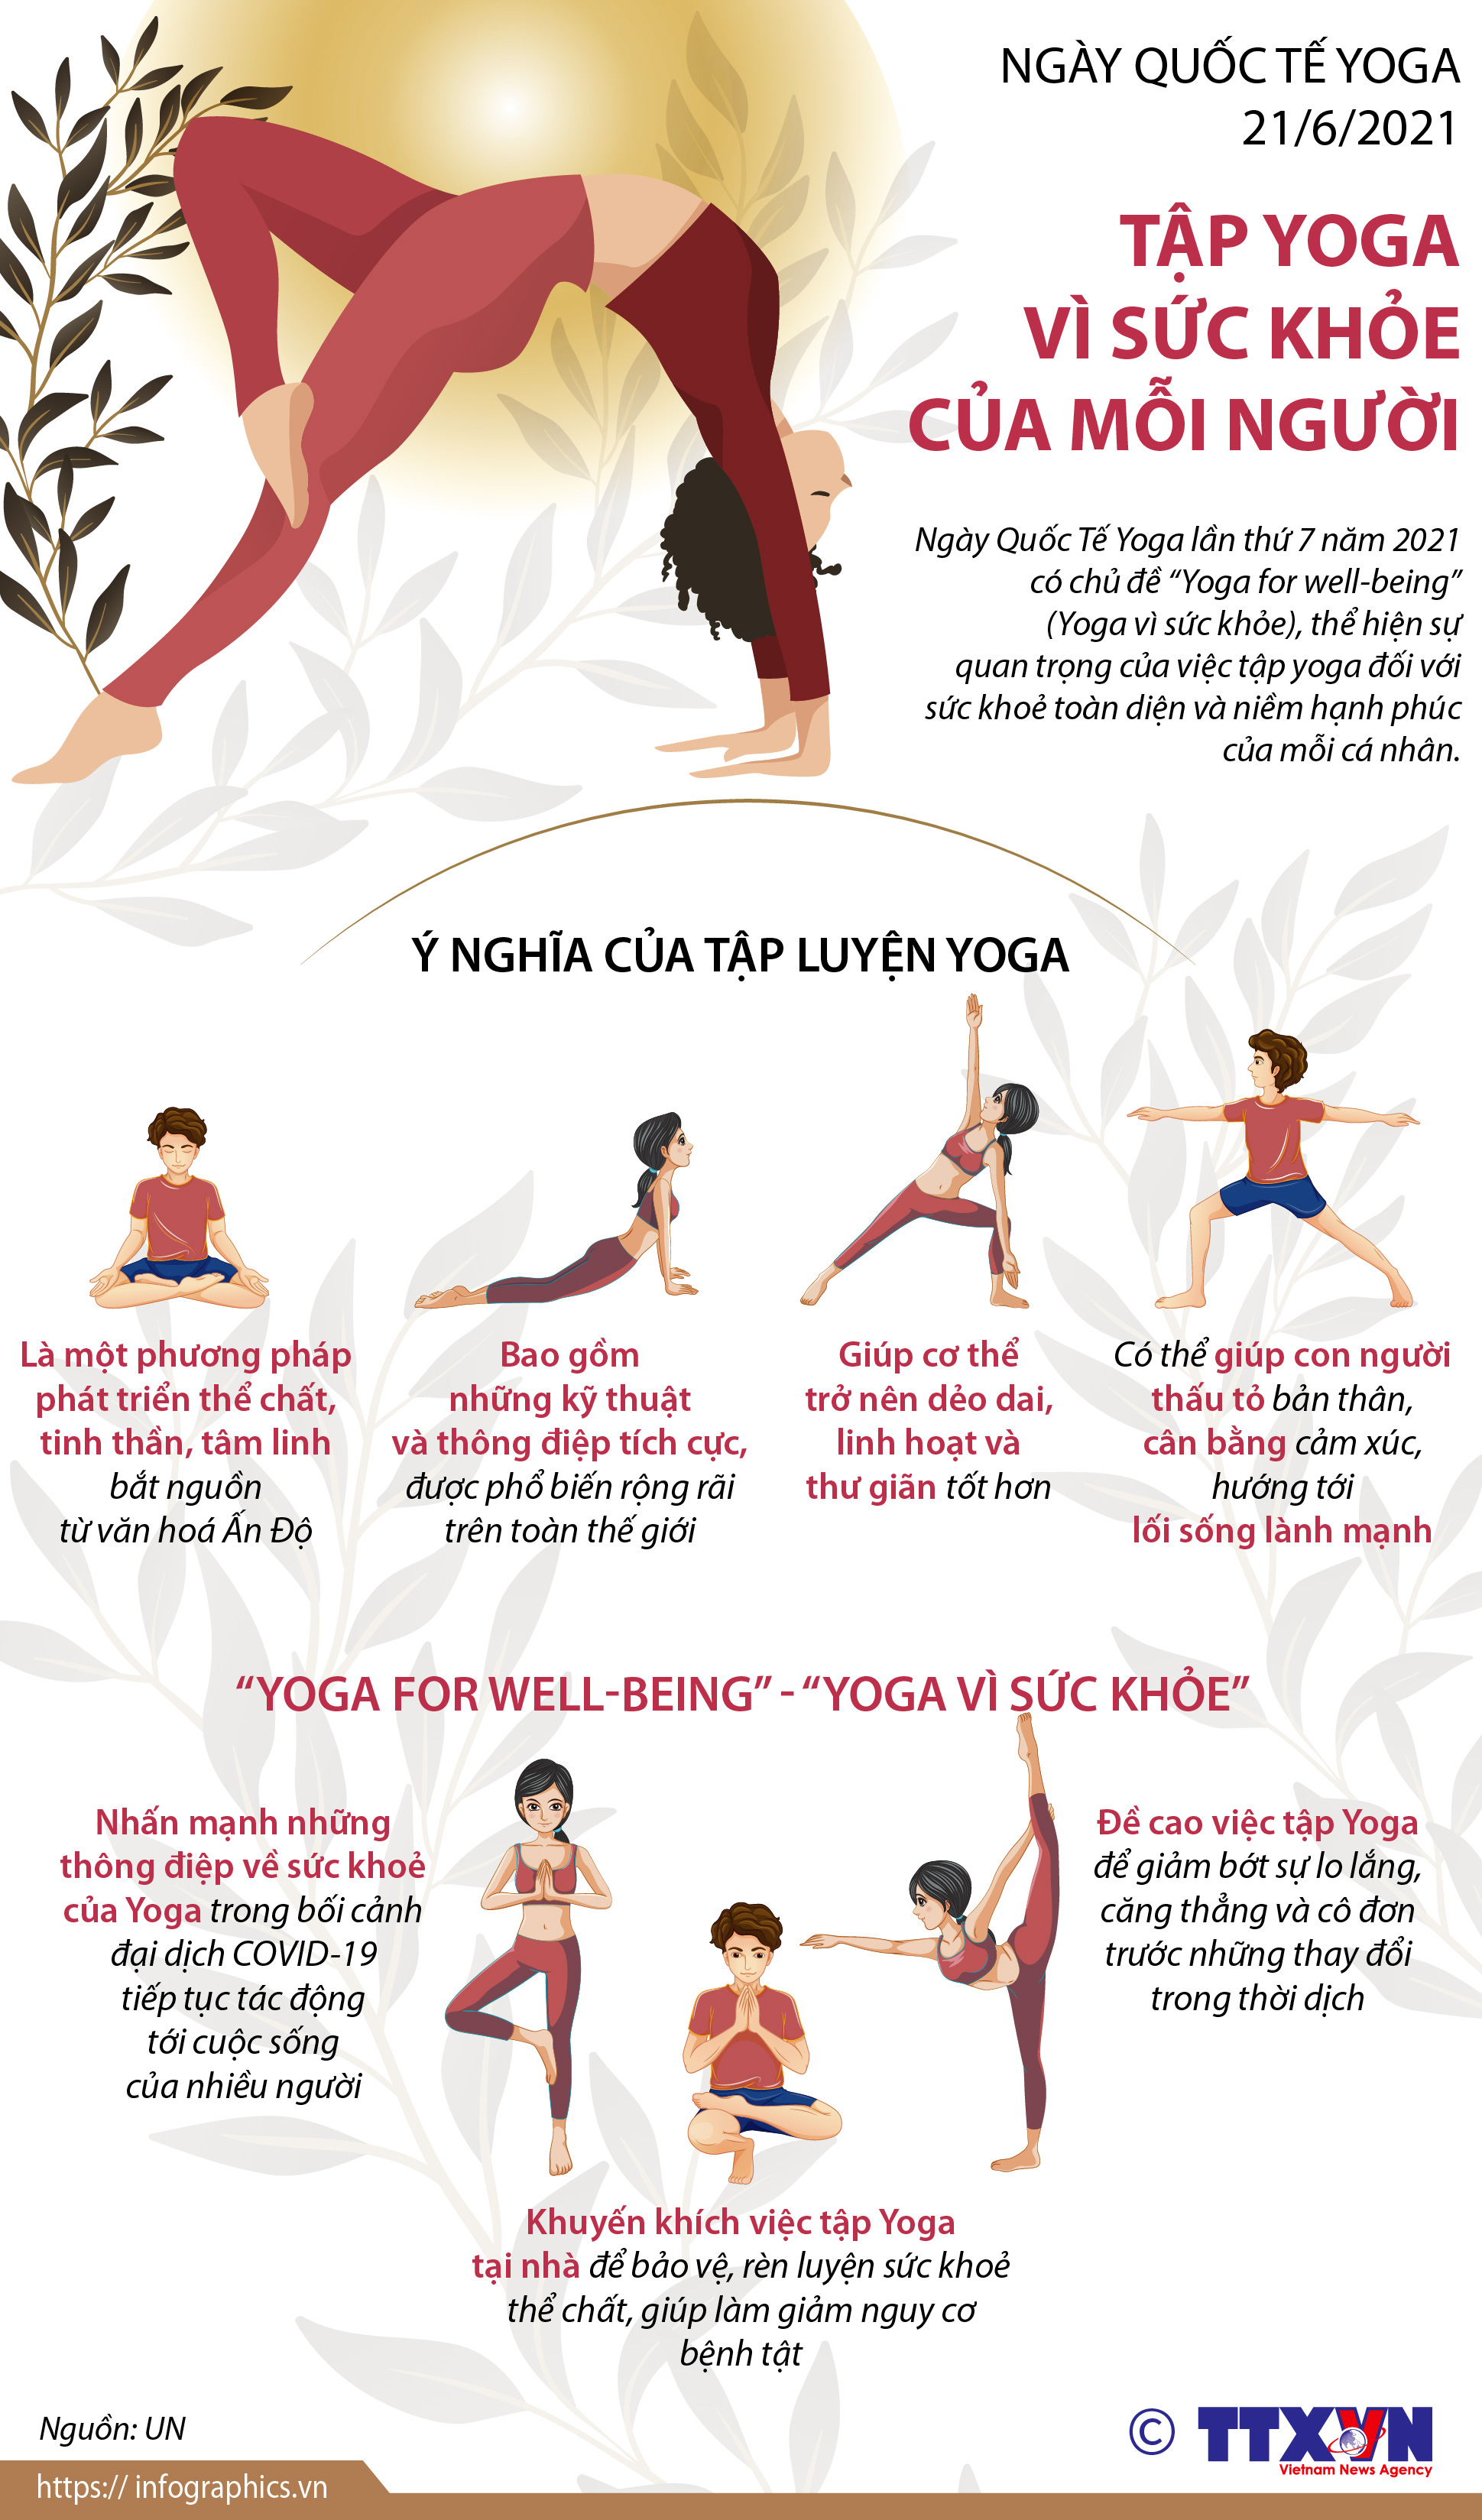 Yoga: Tập yoga không chỉ giúp cơ thể khỏe mạnh mà còn giúp tinh thần sảng khoái, thư giãn. Nếu bạn chưa từng trải nghiệm môn học này, hãy cùng xem hình ảnh bên dưới để khám phá thế giới yoga đầy hấp dẫn!